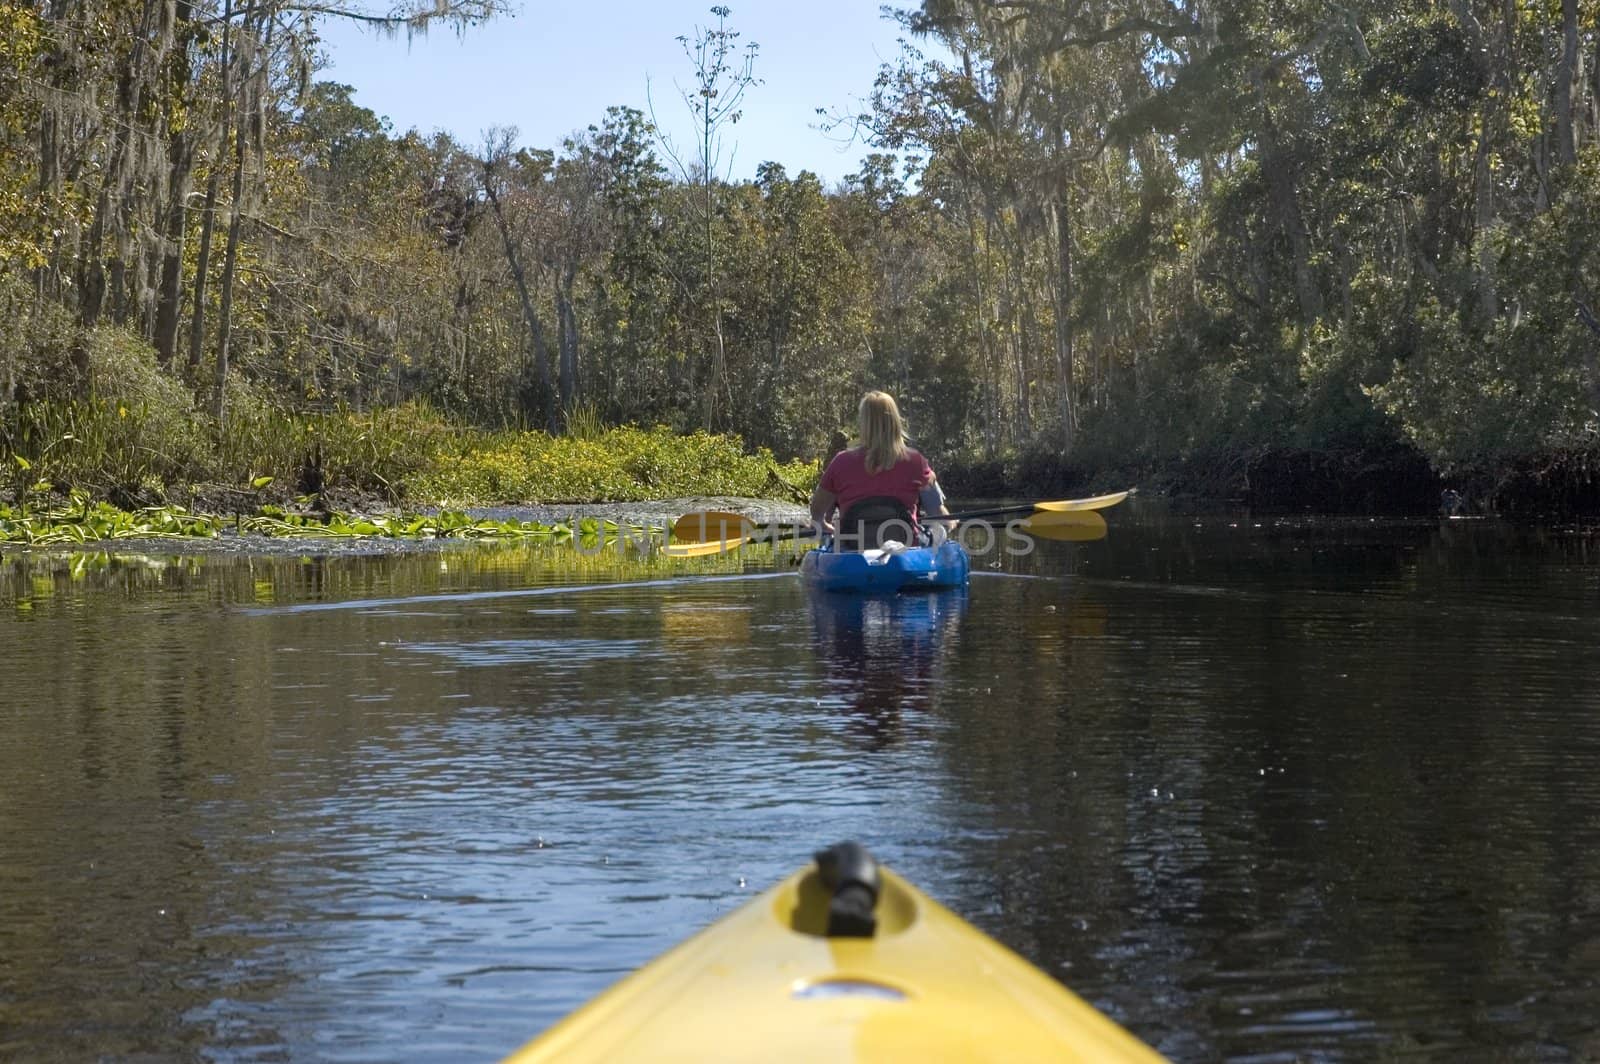 Kayaking the creek near the Suwannee River, Suwannee, Florida